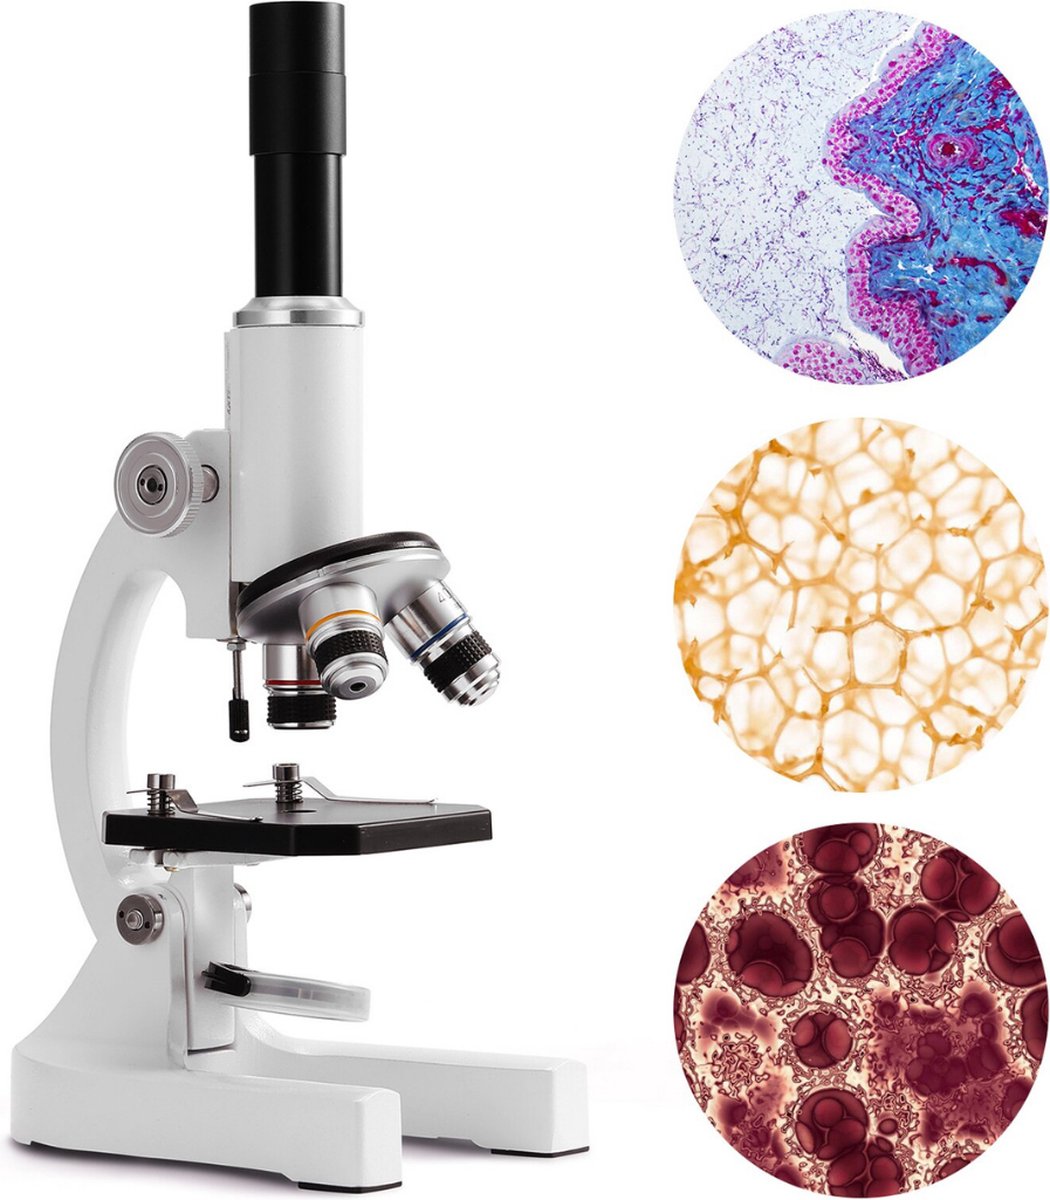 PiProducts Optische Microscoop 64X - 2400X Zoom - Onderwijs - Biologie - Wetenschap - Microscopen - Monoculair - Met Accessoires